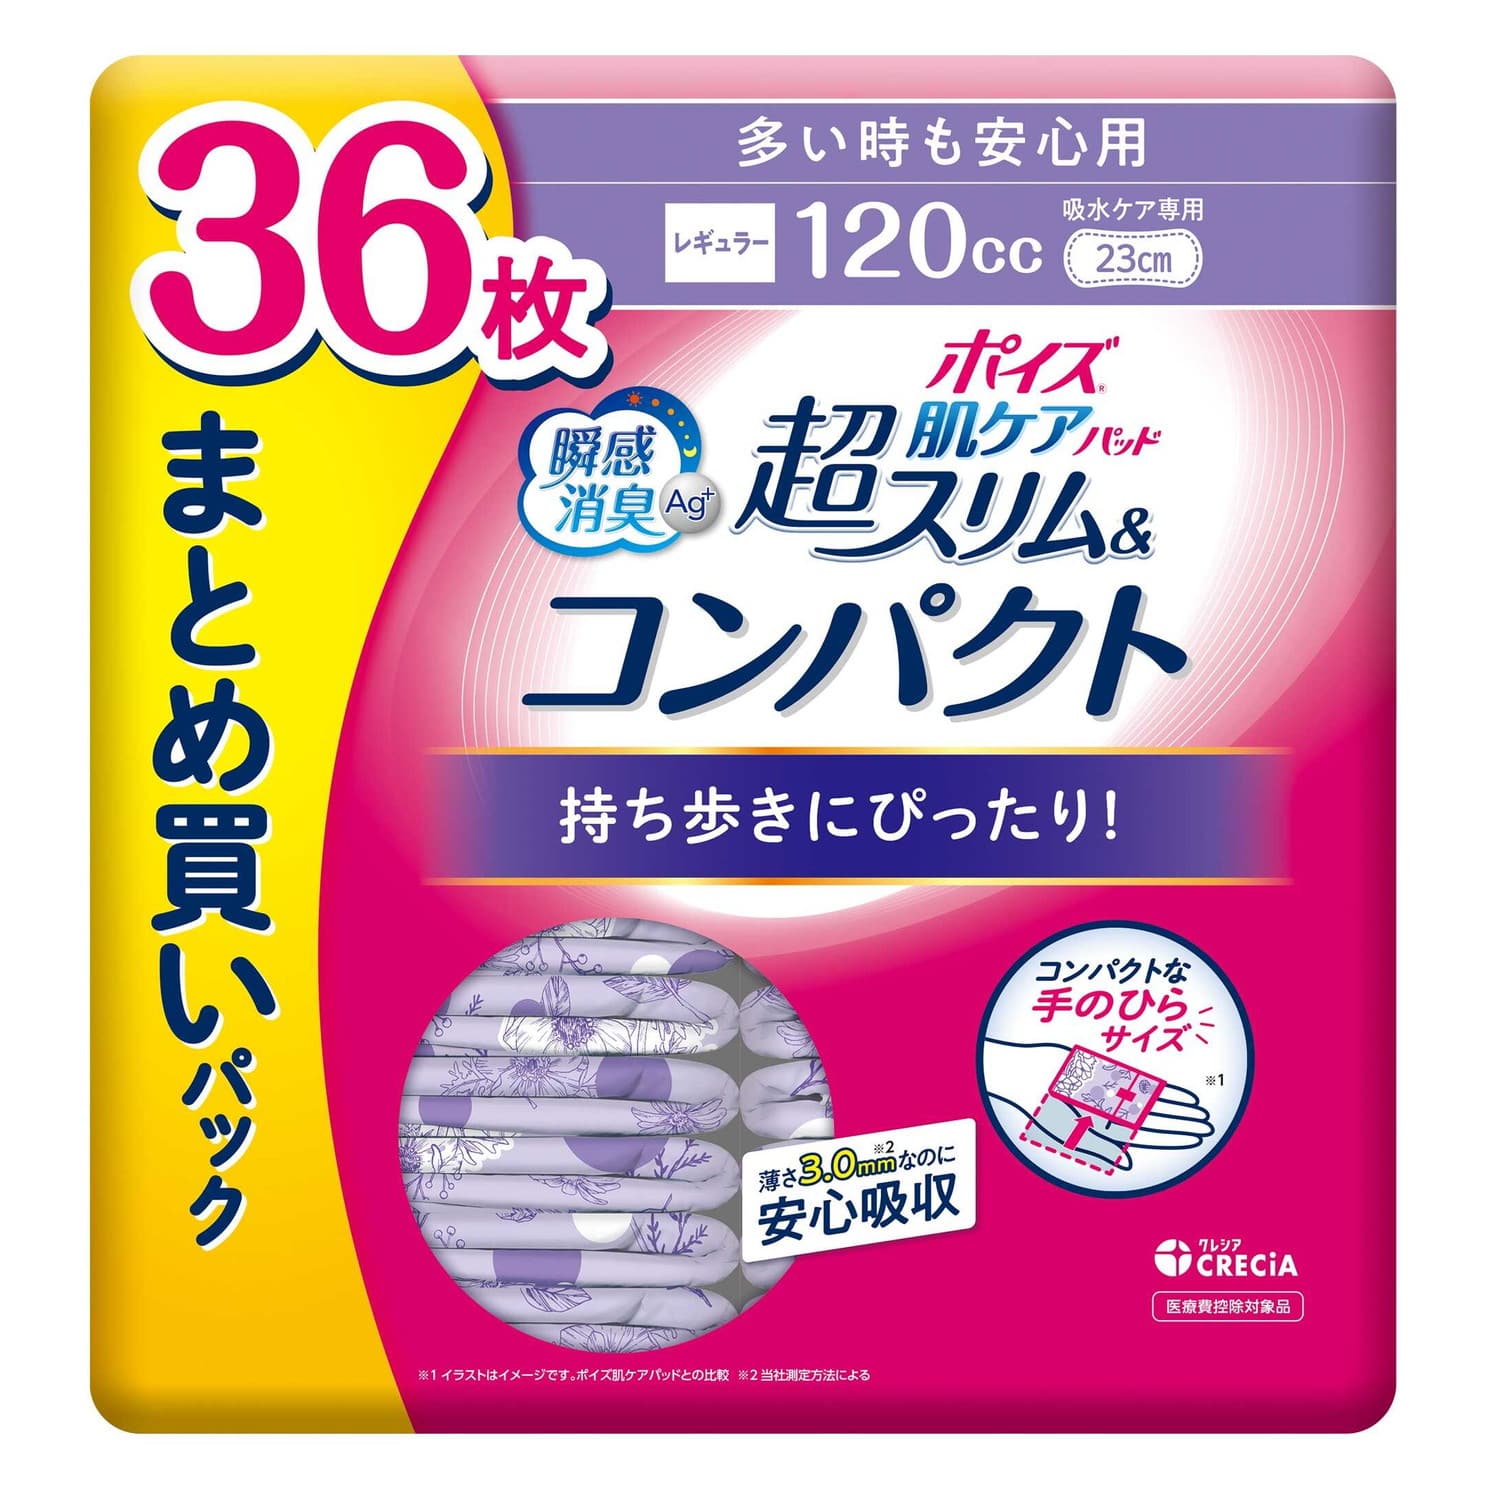 日本製紙クレシア ポイズ肌ケアパッド 多い時も安心用 120cc 23cm 36枚 ...